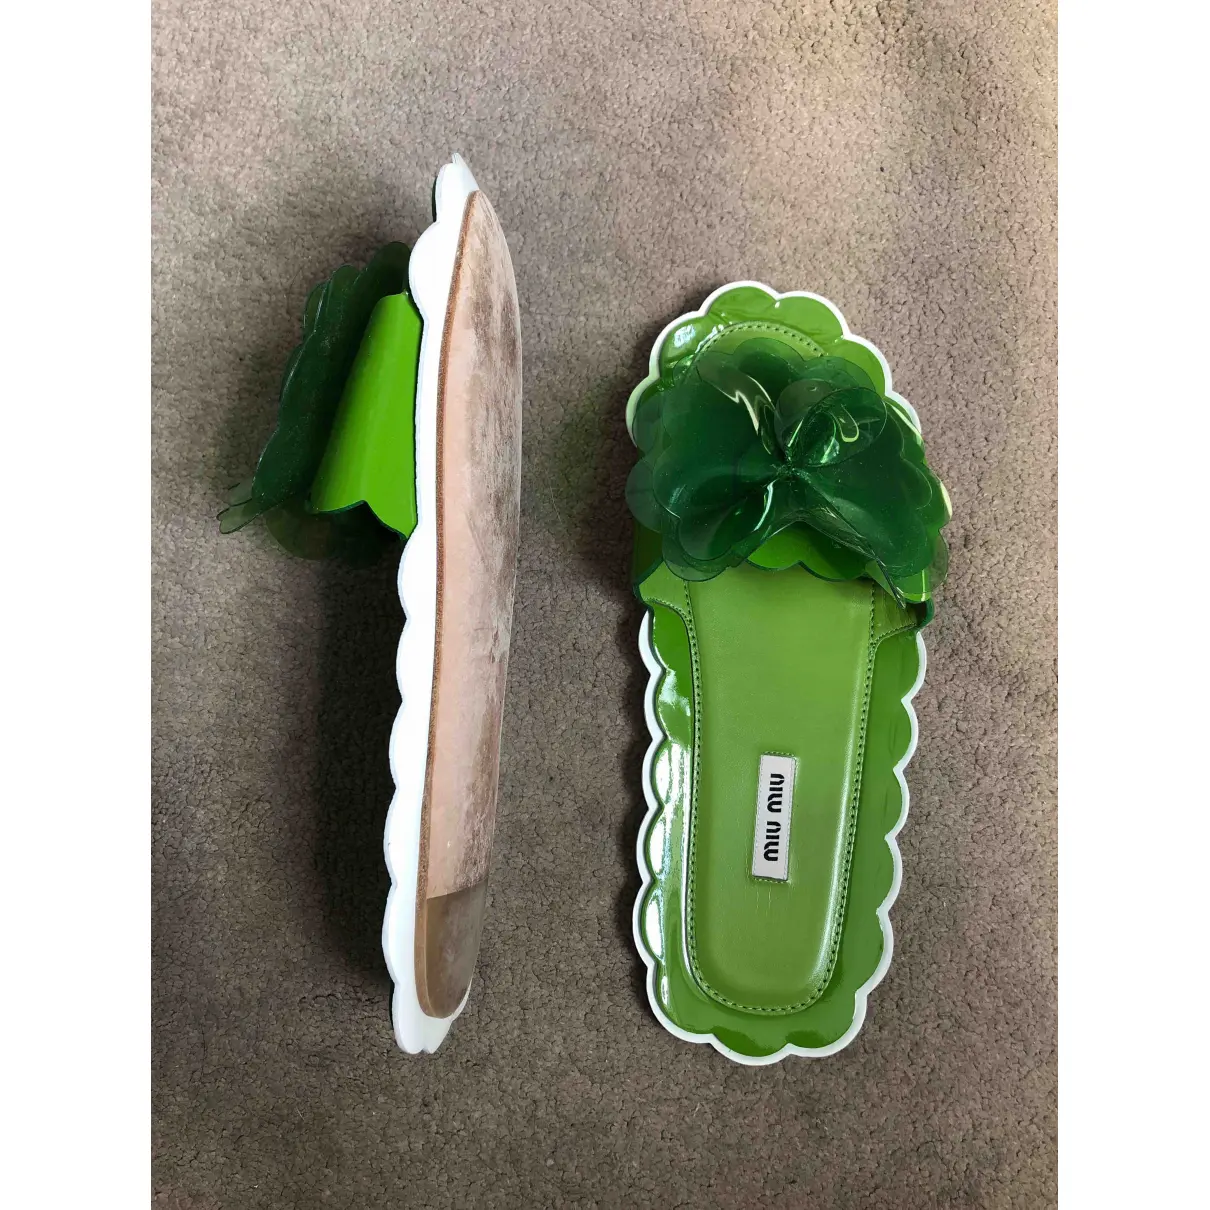 Buy Miu Miu Green Plastic Sandals online